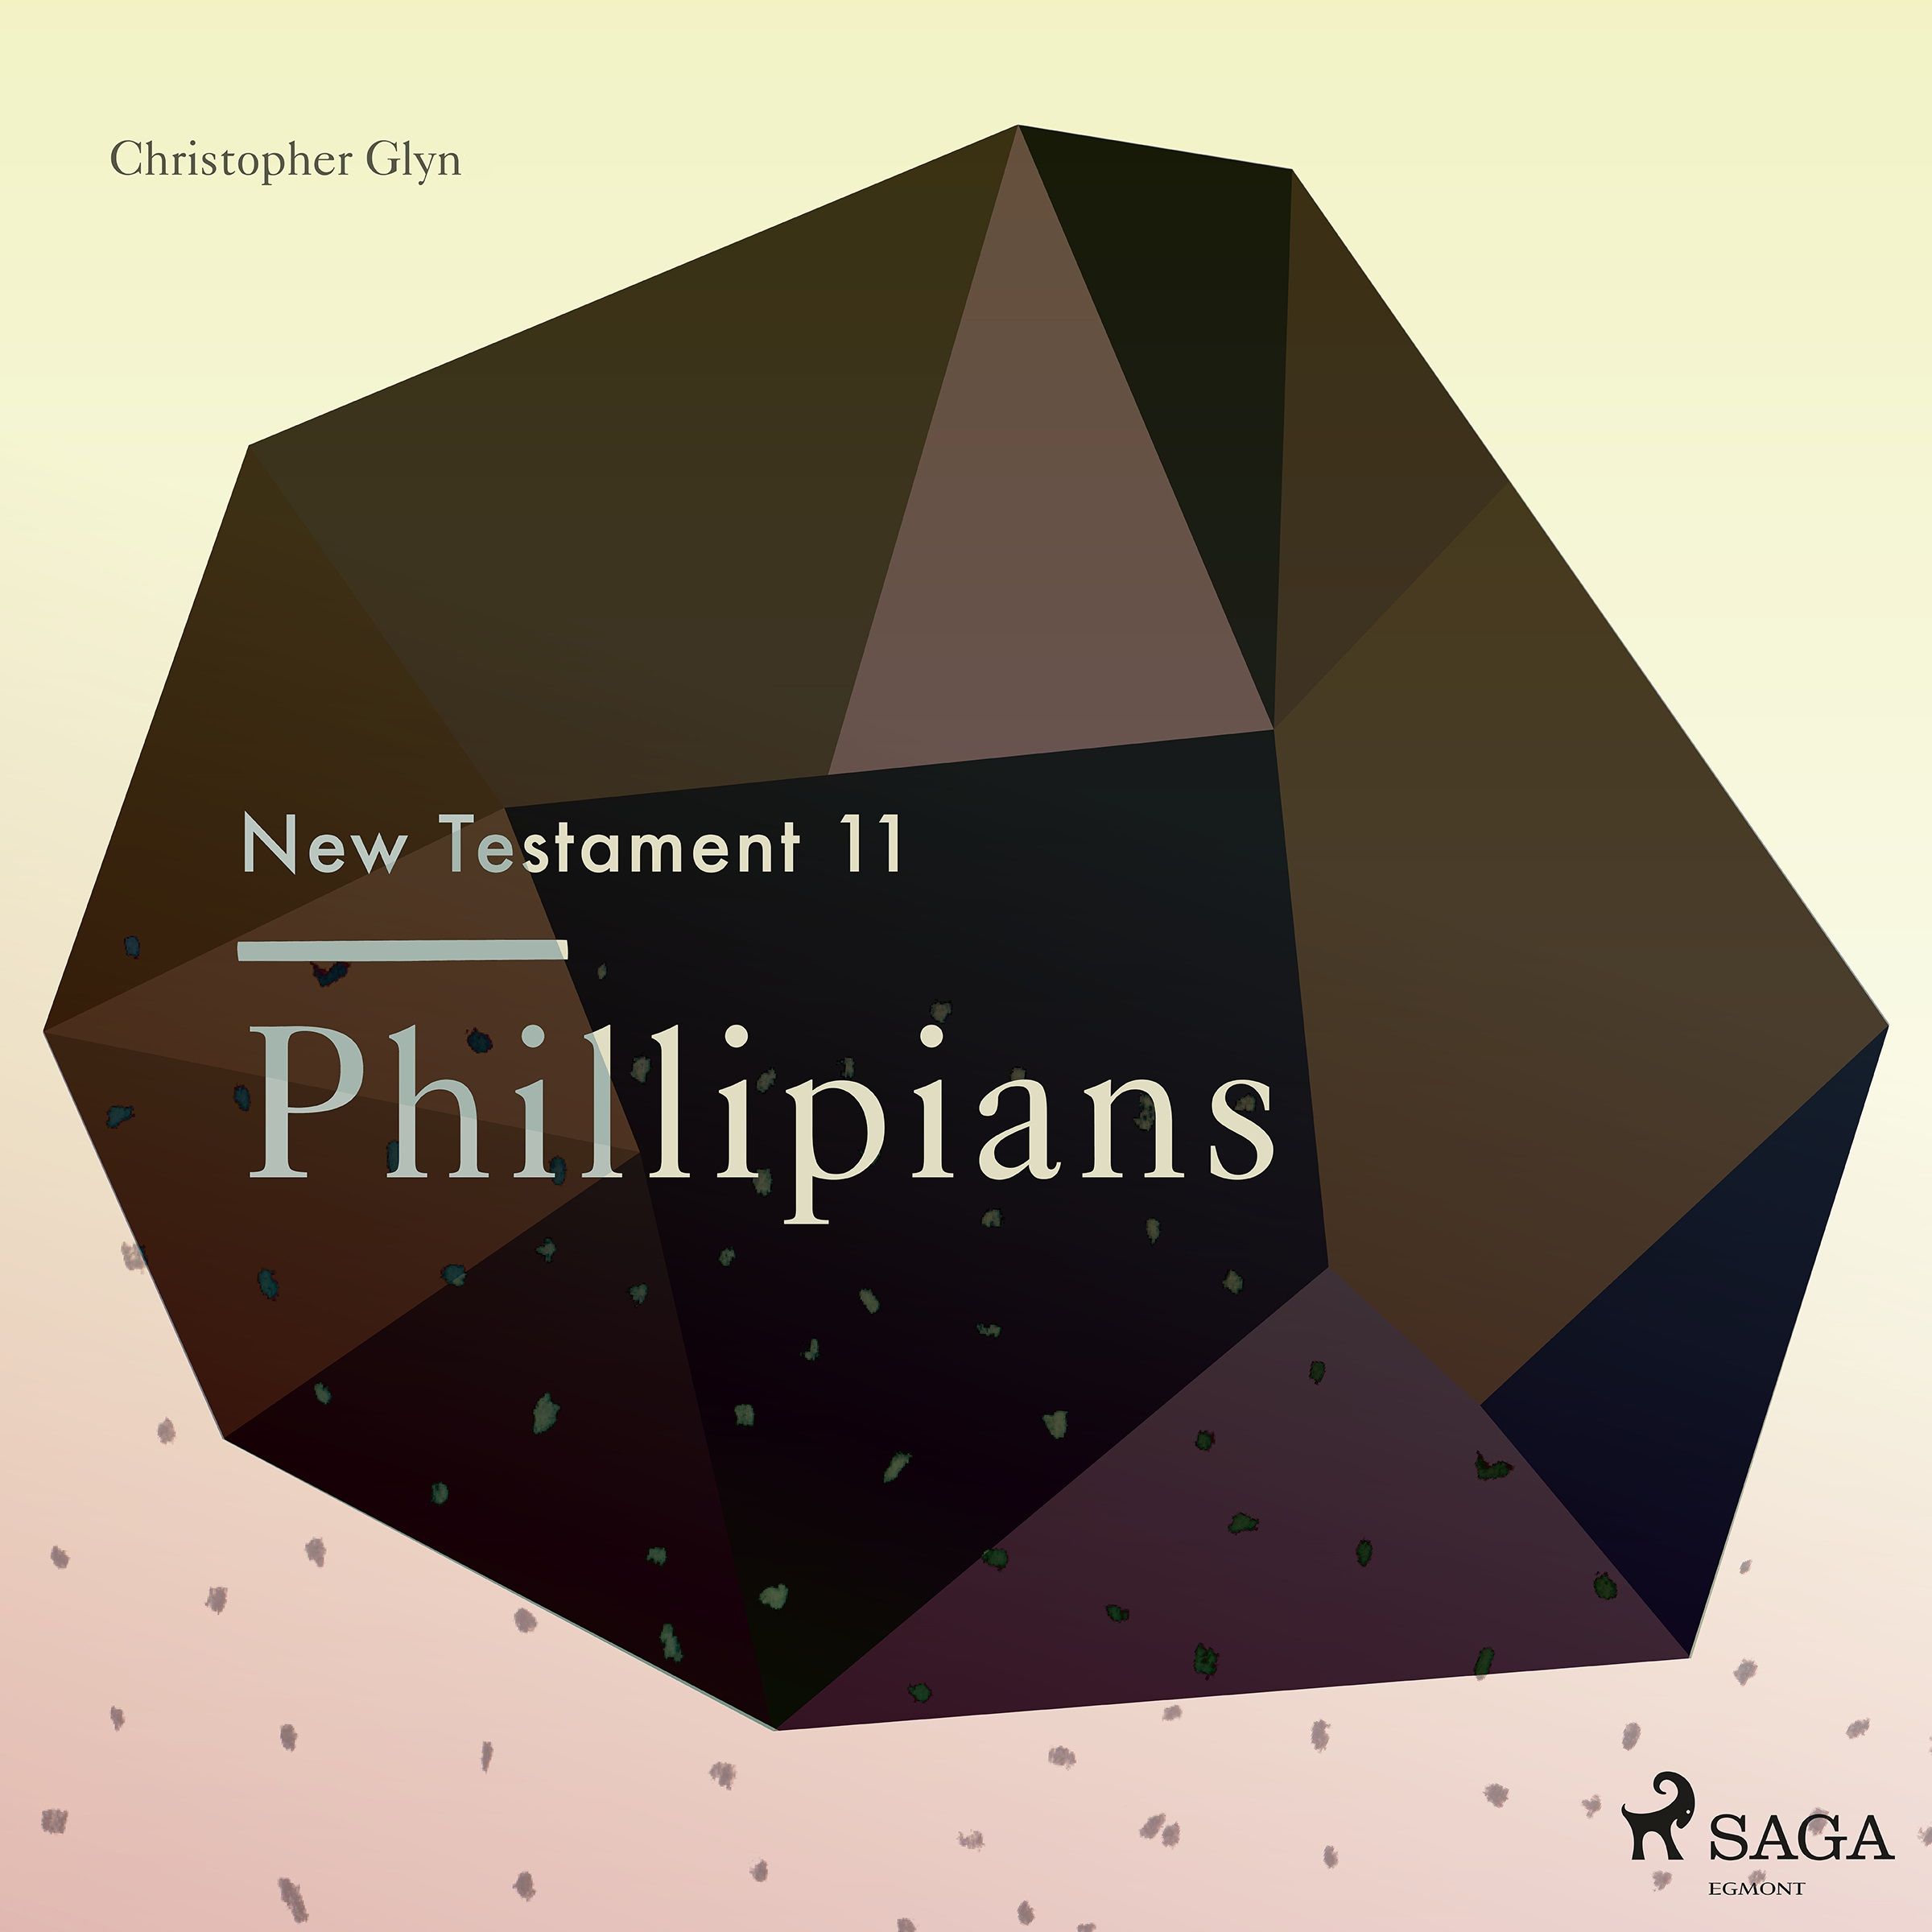 The New Testament 11 - Phillipians, ljudbok av Christopher Glyn